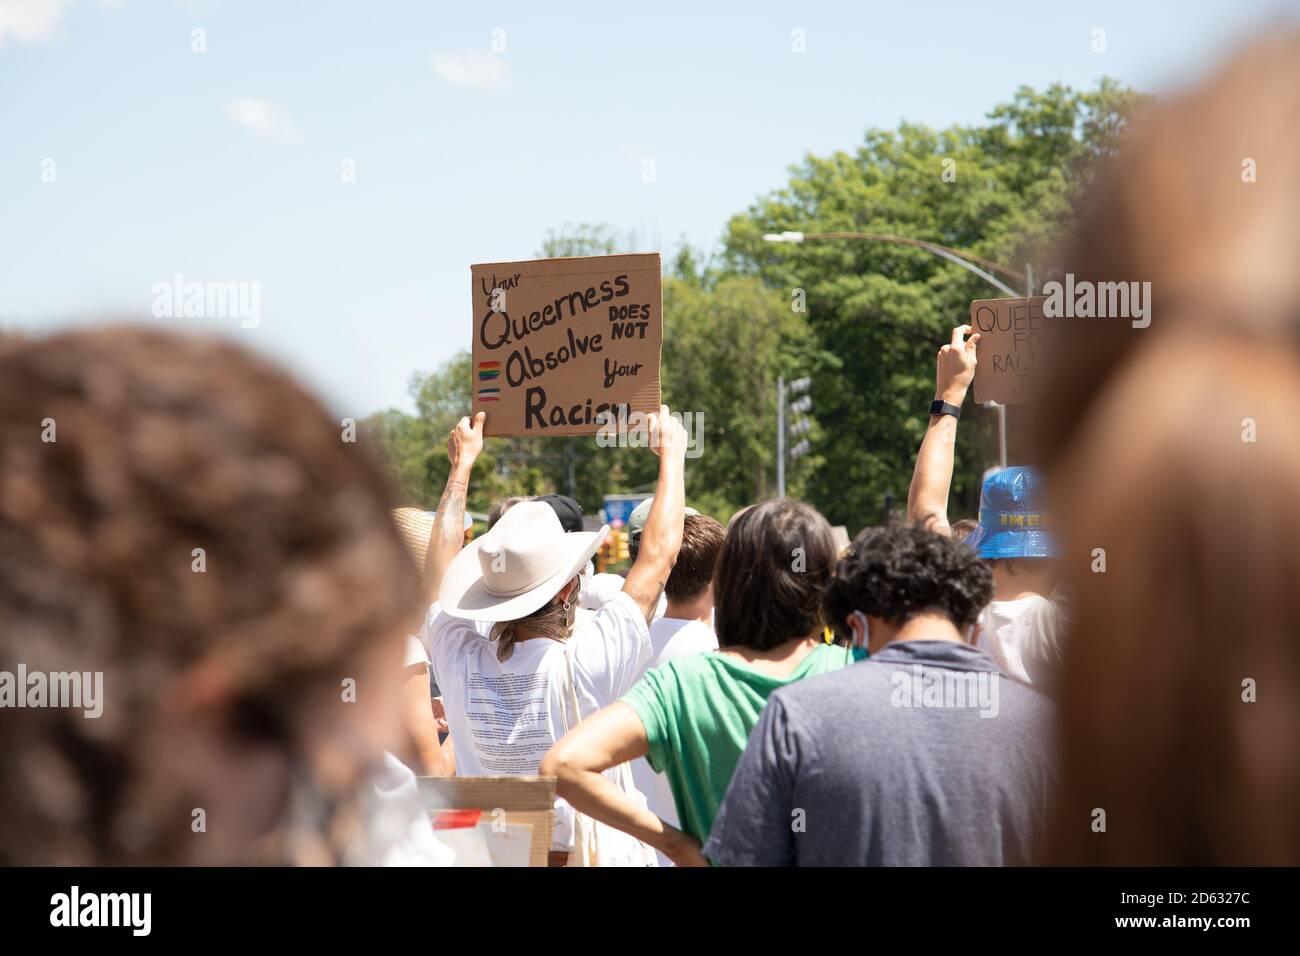 Protestler hält Ihre Queerness nicht freisprechen Ihr Rassismus Zeichen während Protest, Brooklyn, New York, USA Stockfoto